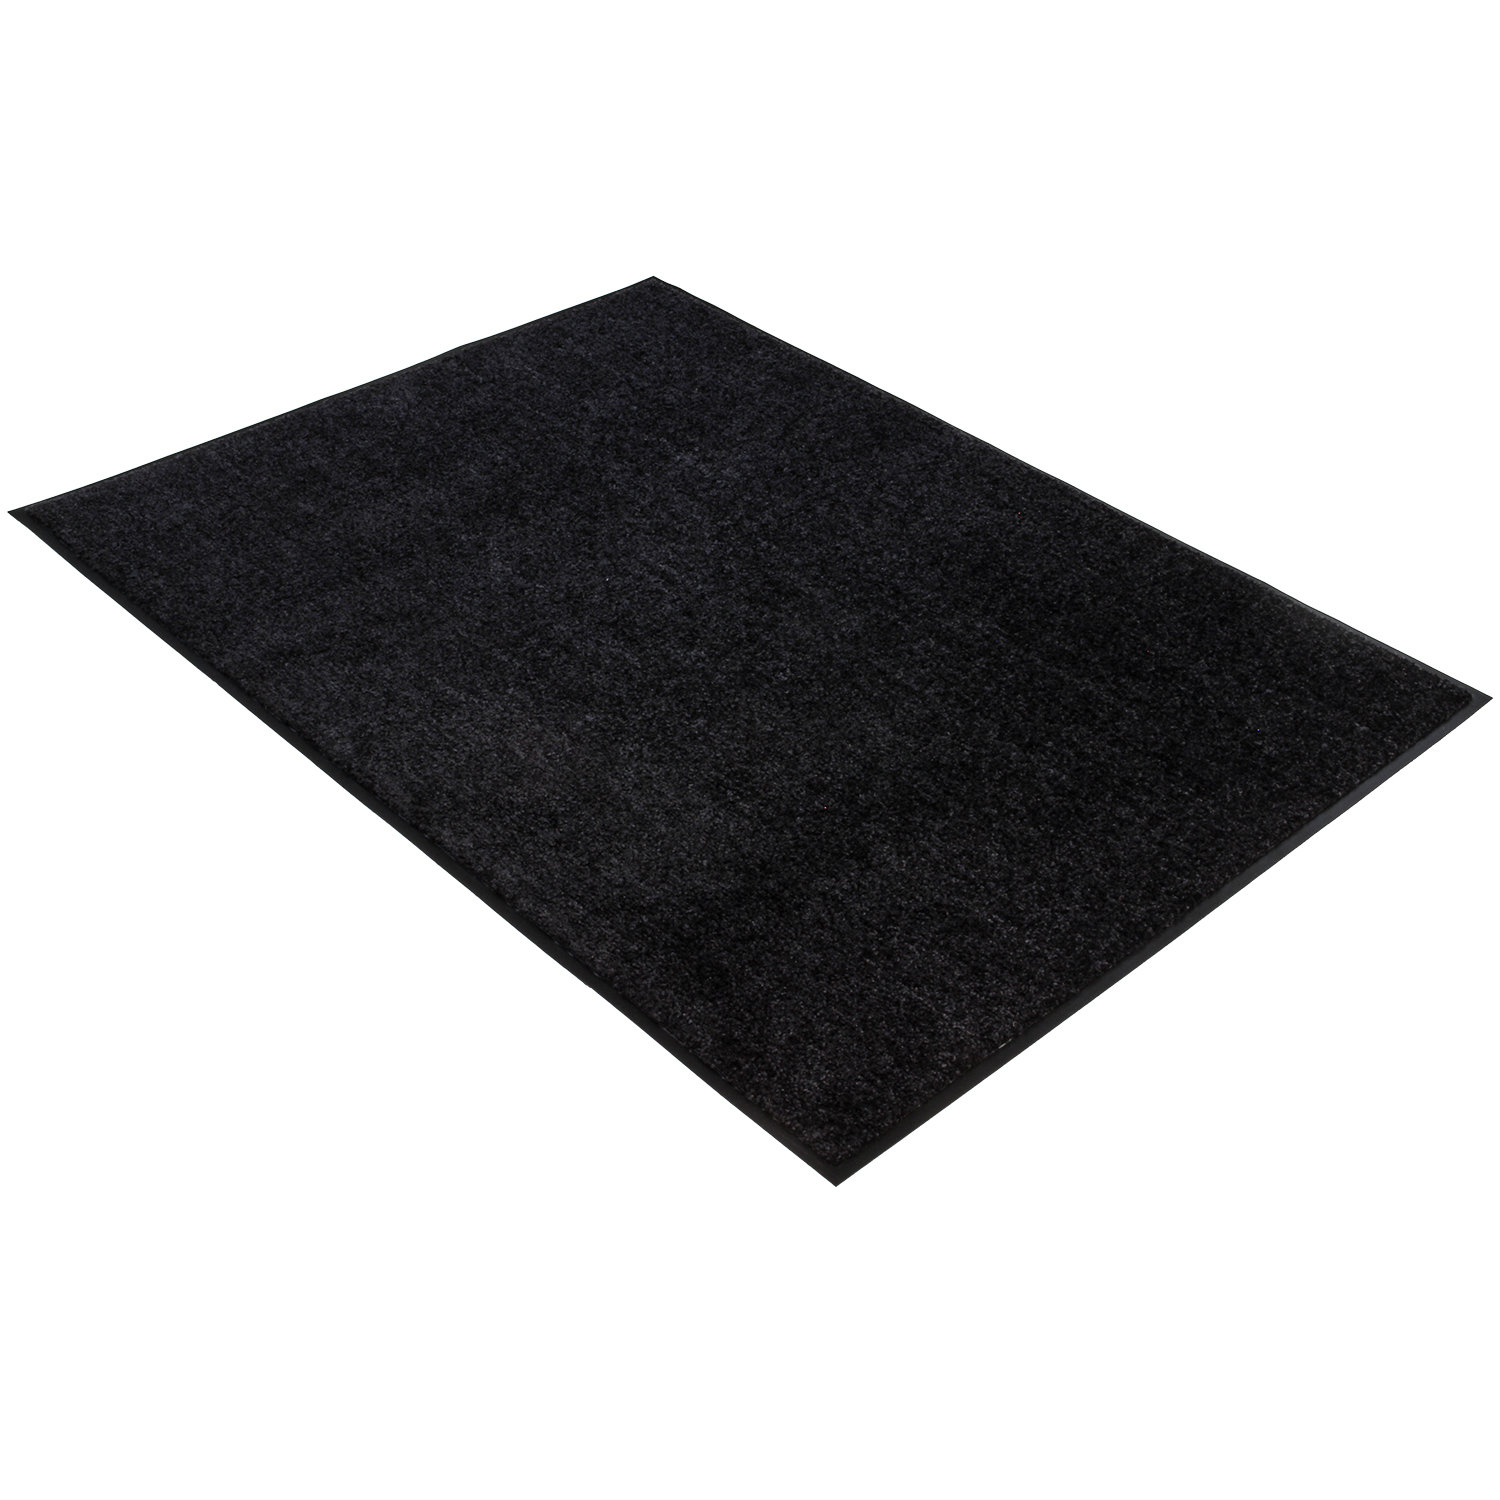 Droogloopmat  - Zwart/Antraciet - 90 x 150 cm - Rubberen onderrug - 1,5 cm rand - Wash & Clean